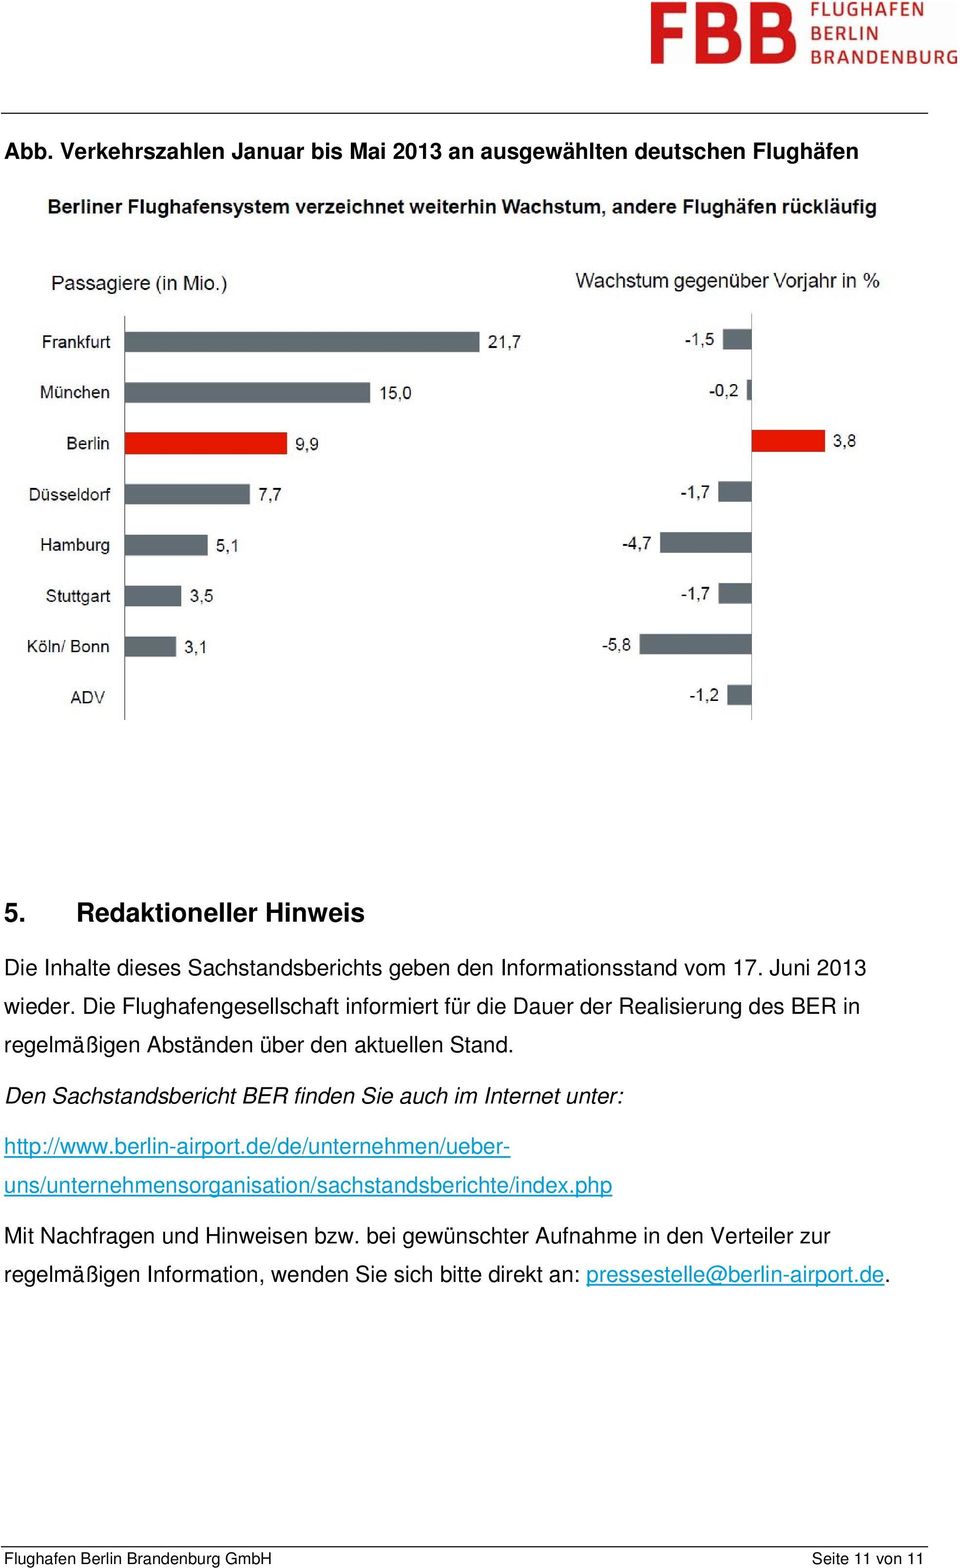 Den Sachstandsbericht BER finden Sie auch im Internet unter: http://www.berlin-airport.de/de/unternehmen/ueberuns/unternehmensorganisation/sachstandsberichte/index.